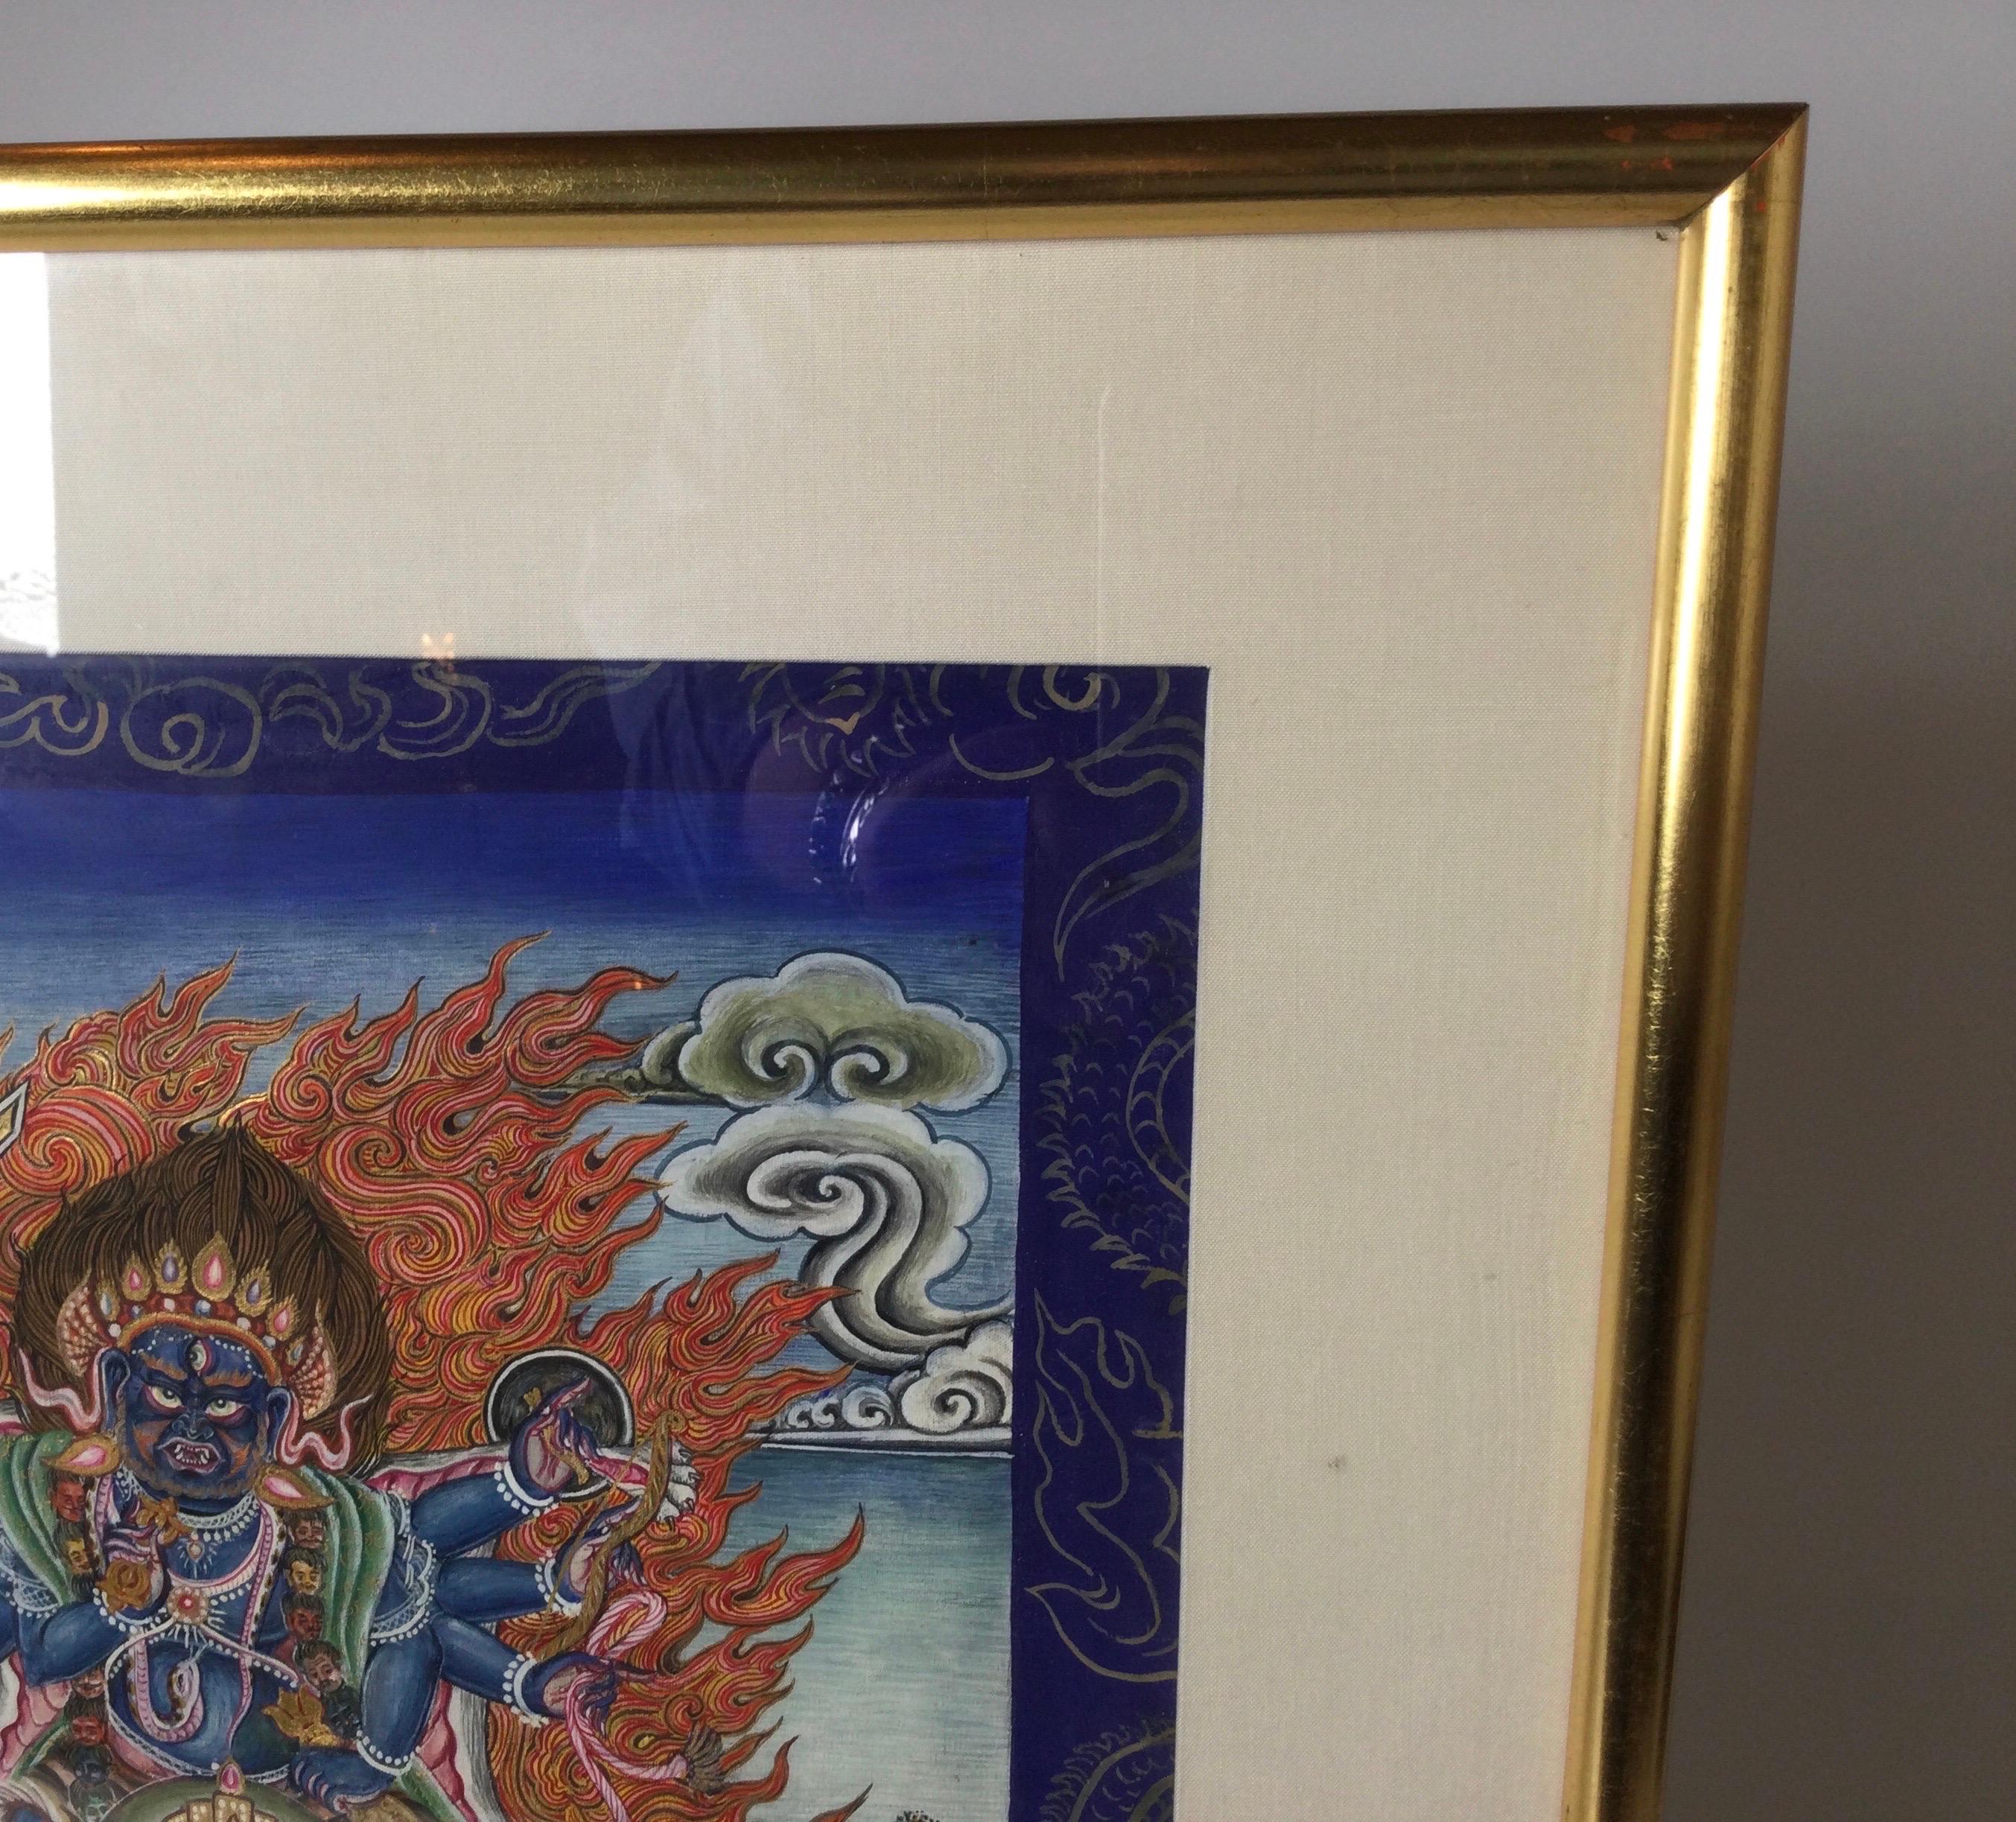 Une paire d'aquarelles birmanes aux couleurs vives représentant des divinités. Les tableaux du début du XXe siècle sont encadrés professionnellement dans des cadres en bois doré.